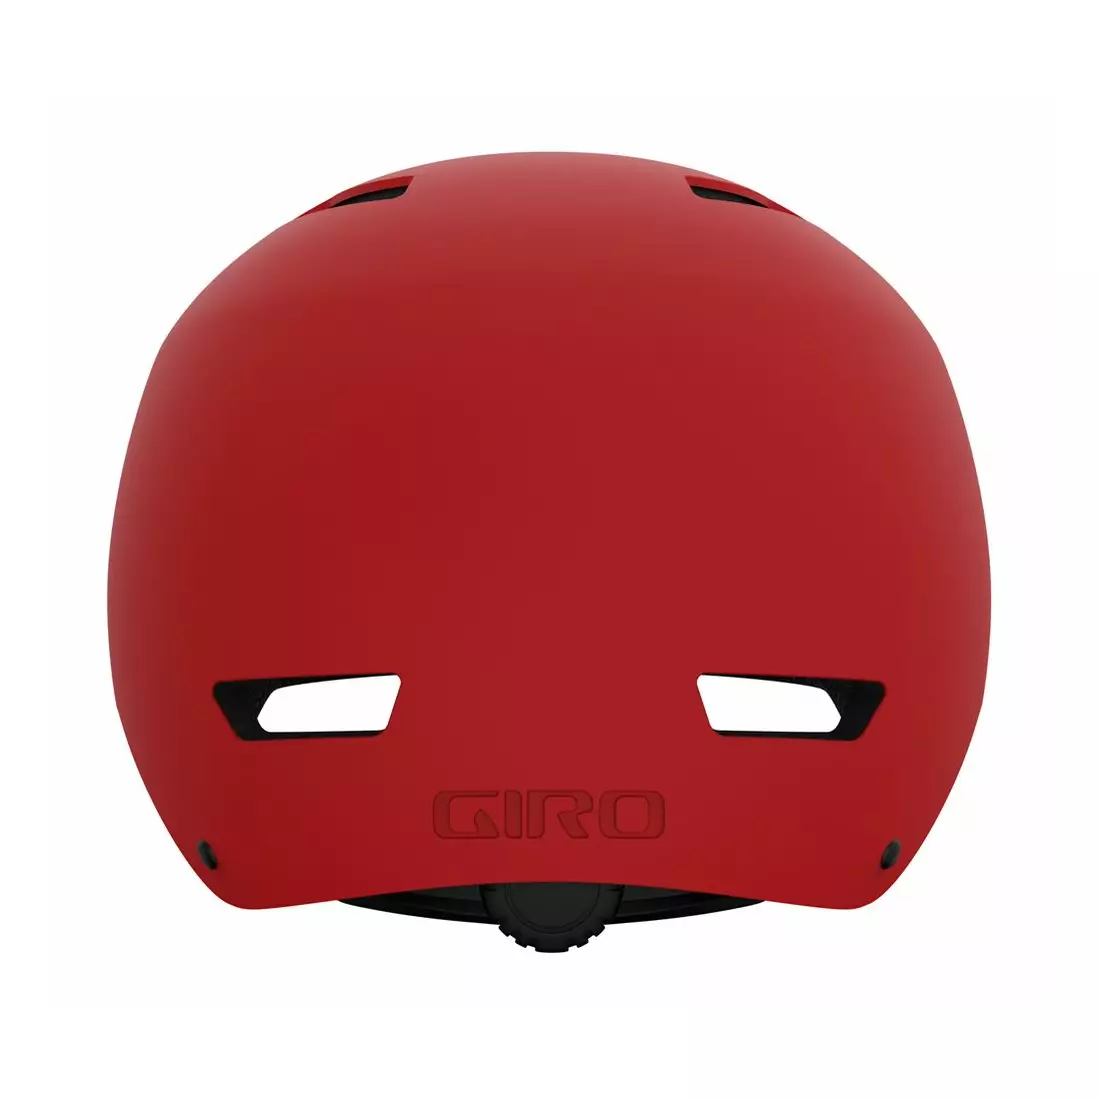 GIRO cyklistická helma bmx QUARTER FS matte trim red GR-7129586